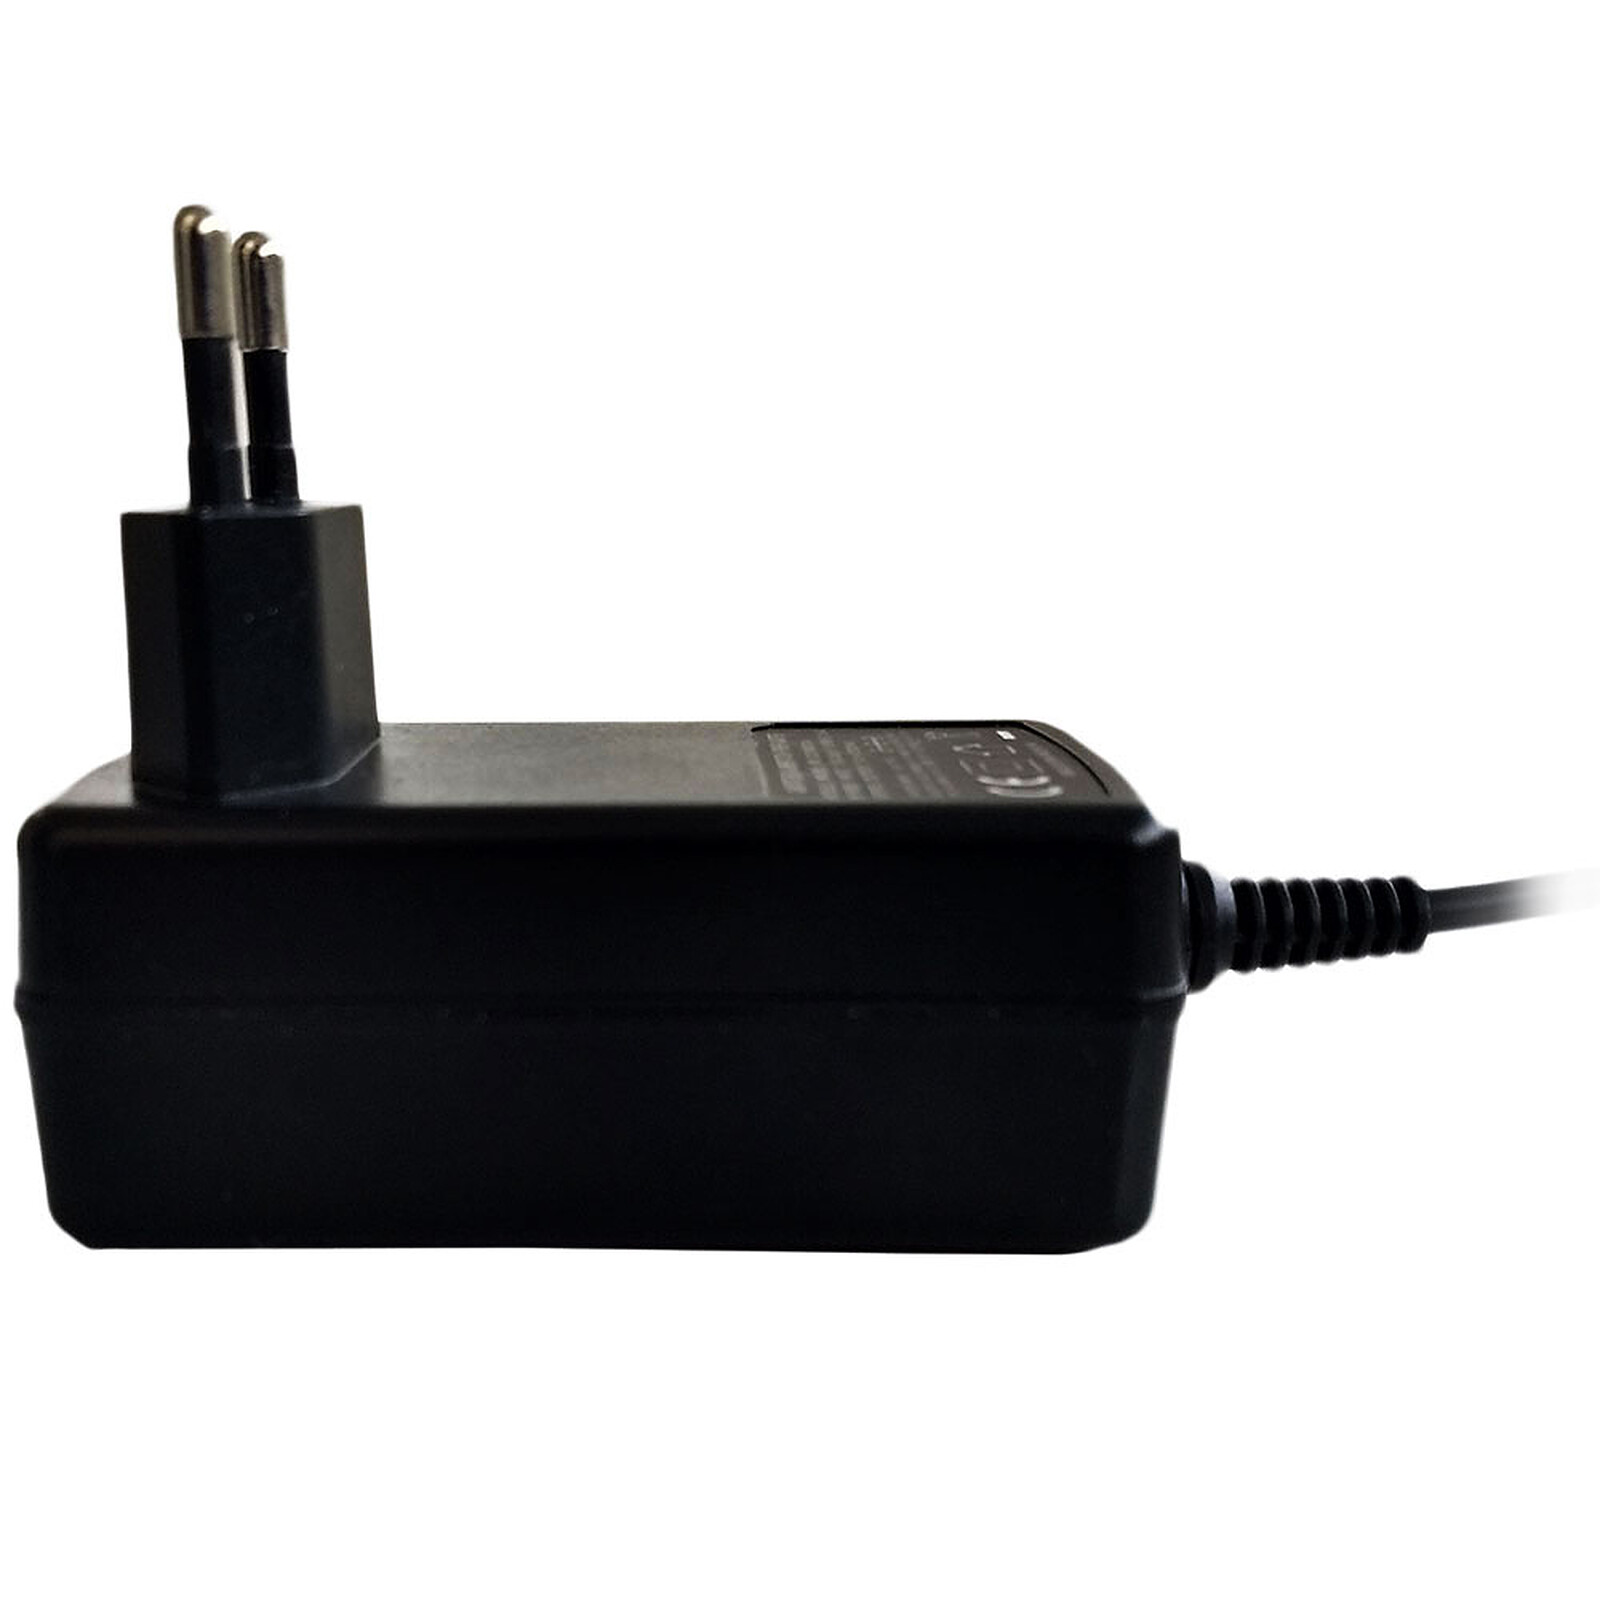 ASUS Adaptateur secteur 45W USB-C (0A001-00692900) - Chargeur PC portable -  Garantie 3 ans LDLC